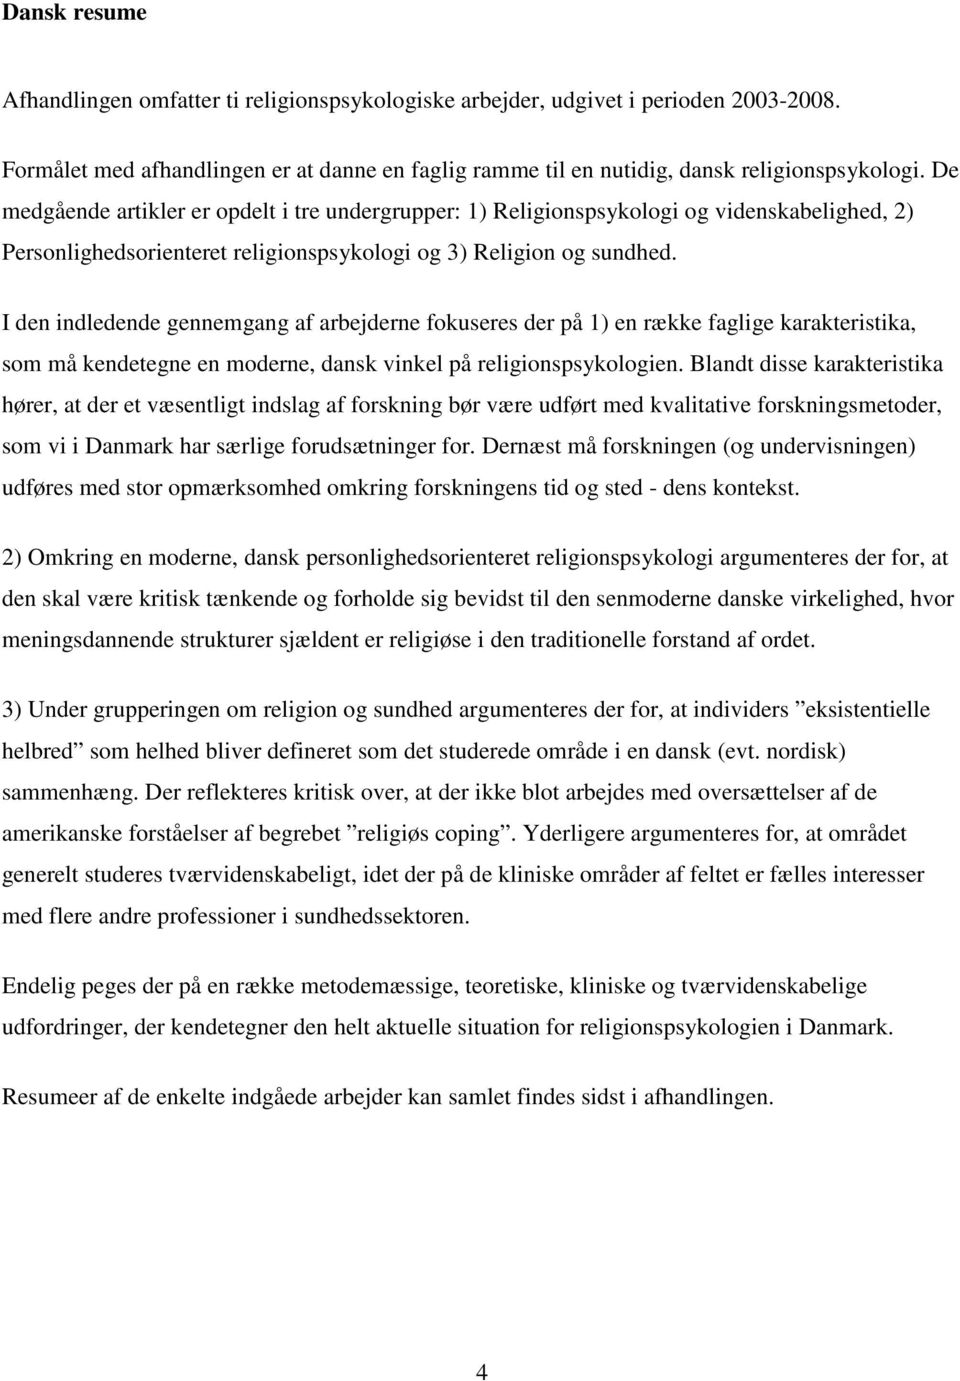 I den indledende gennemgang af arbejderne fokuseres der på 1) en række faglige karakteristika, som må kendetegne en moderne, dansk vinkel på religionspsykologien.